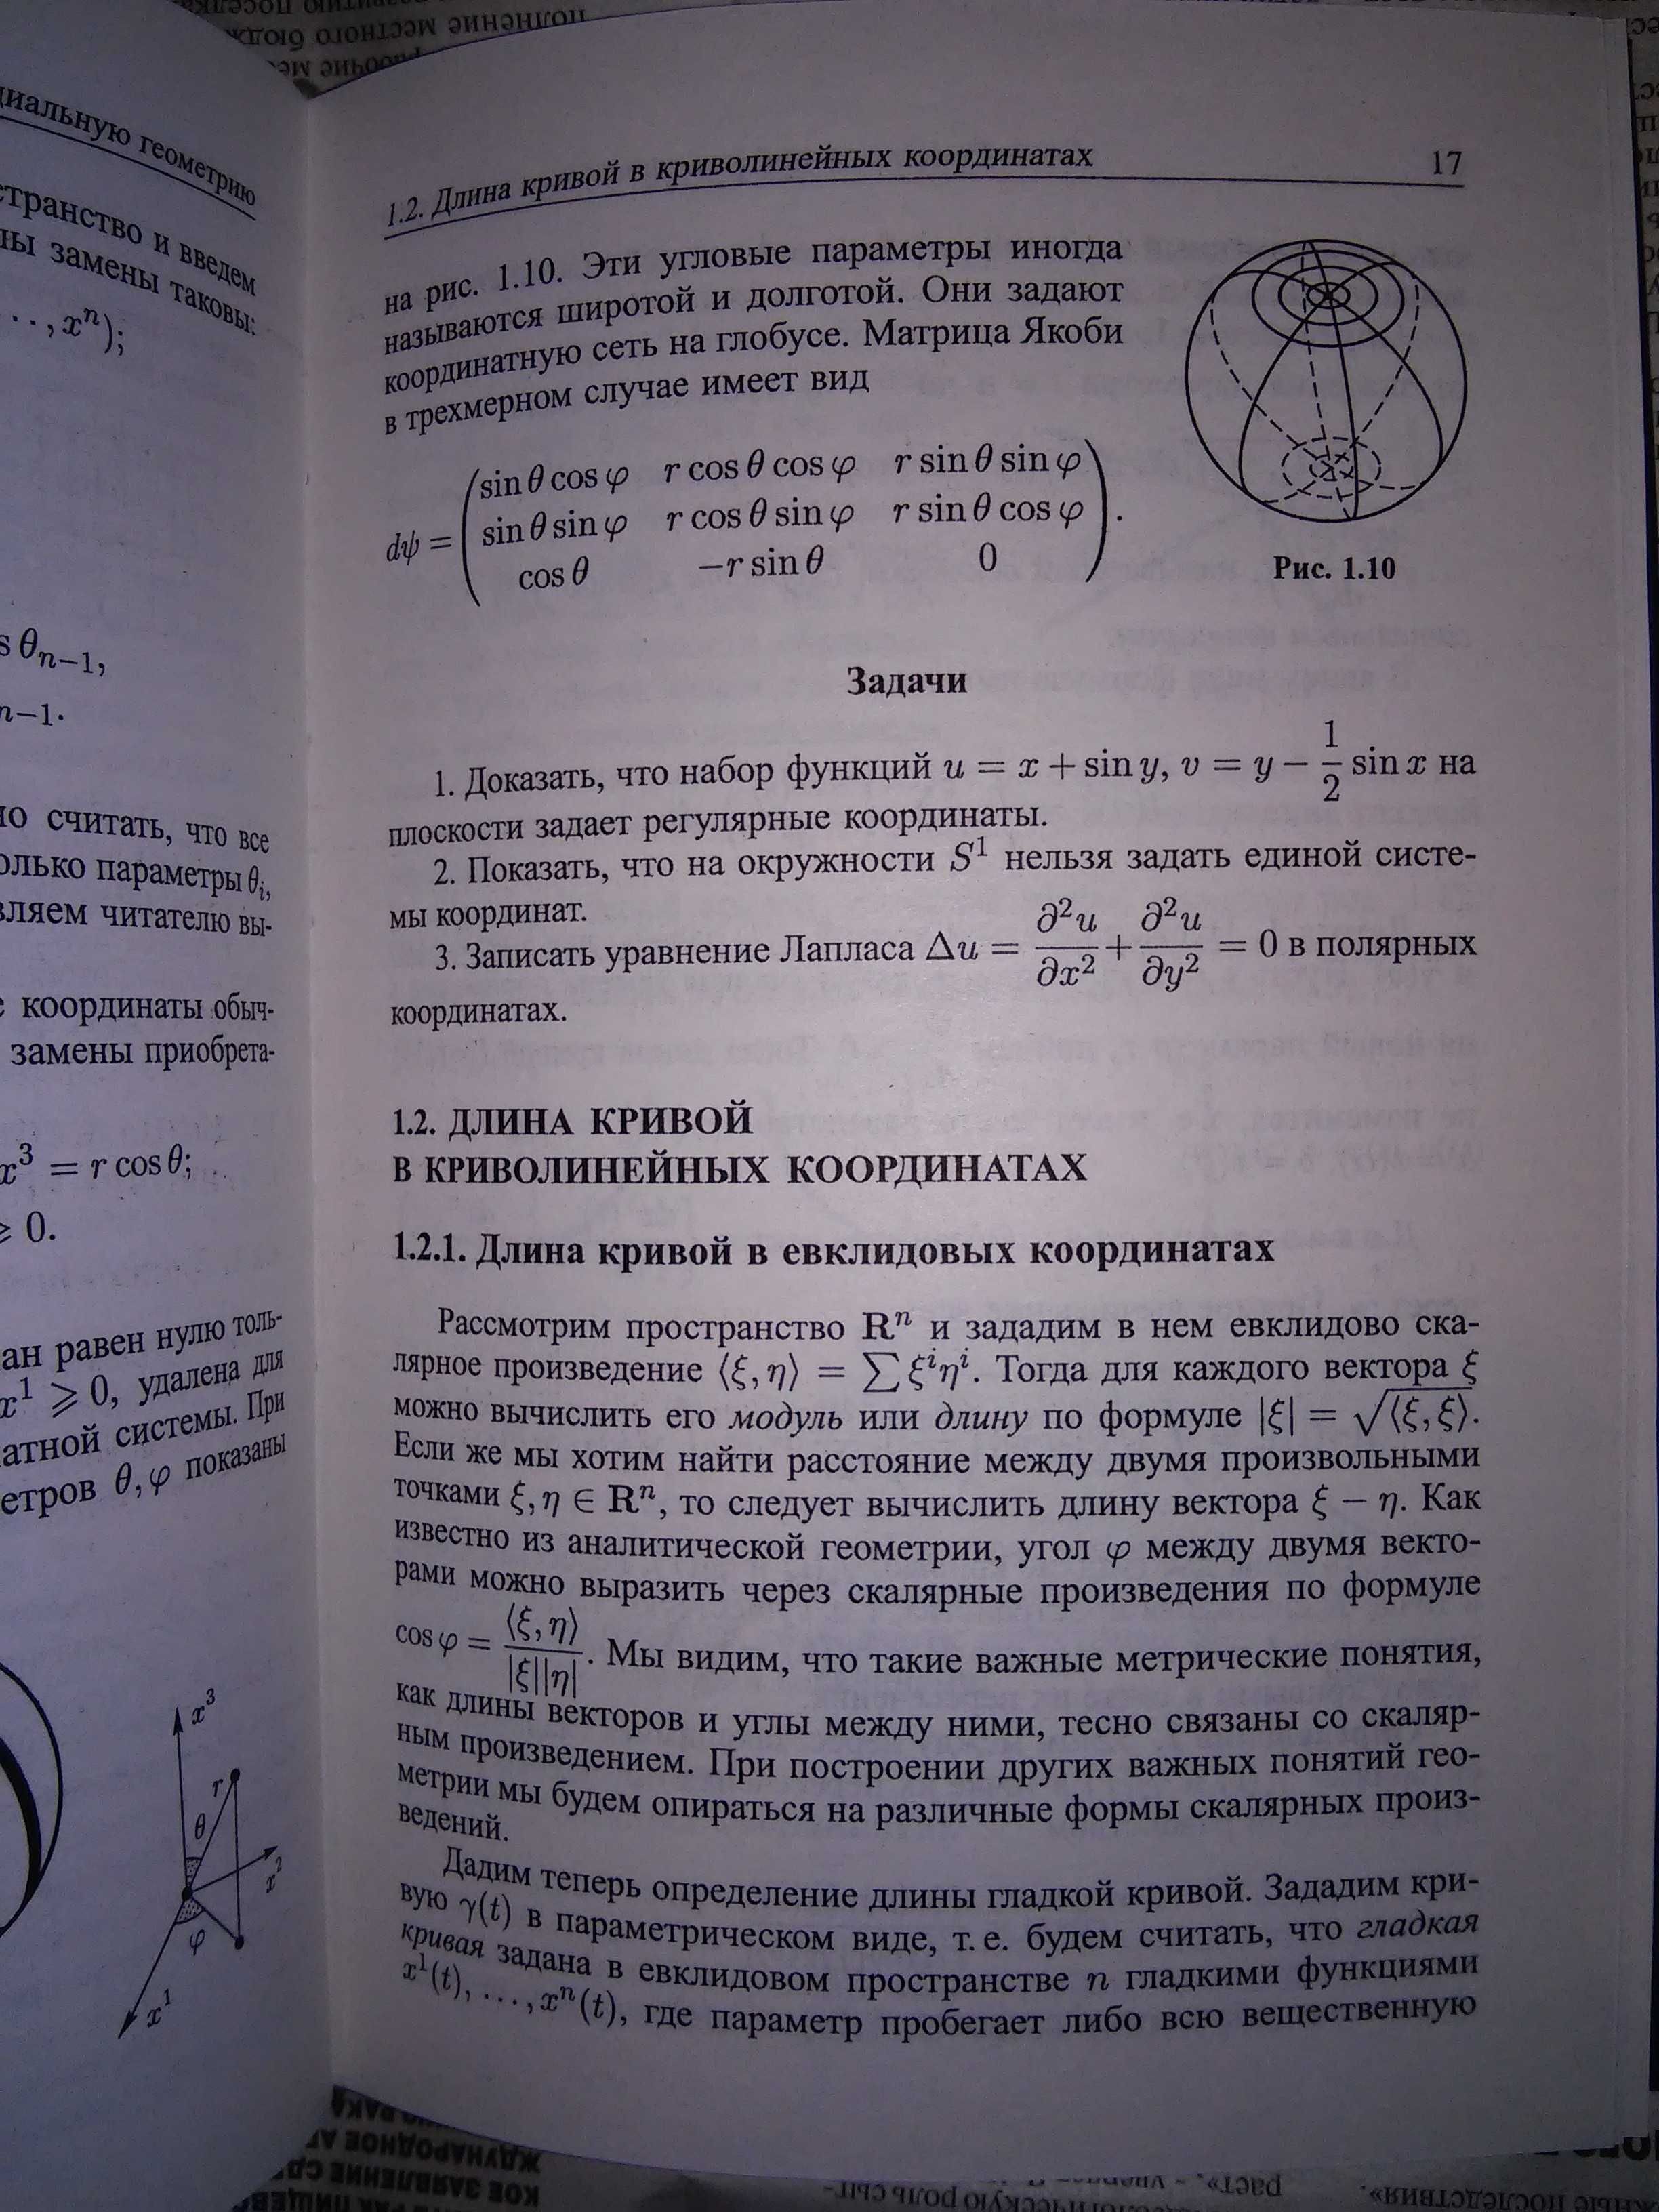 Фоменко Краткий курс дифференциальной геометрии и топологии 2004